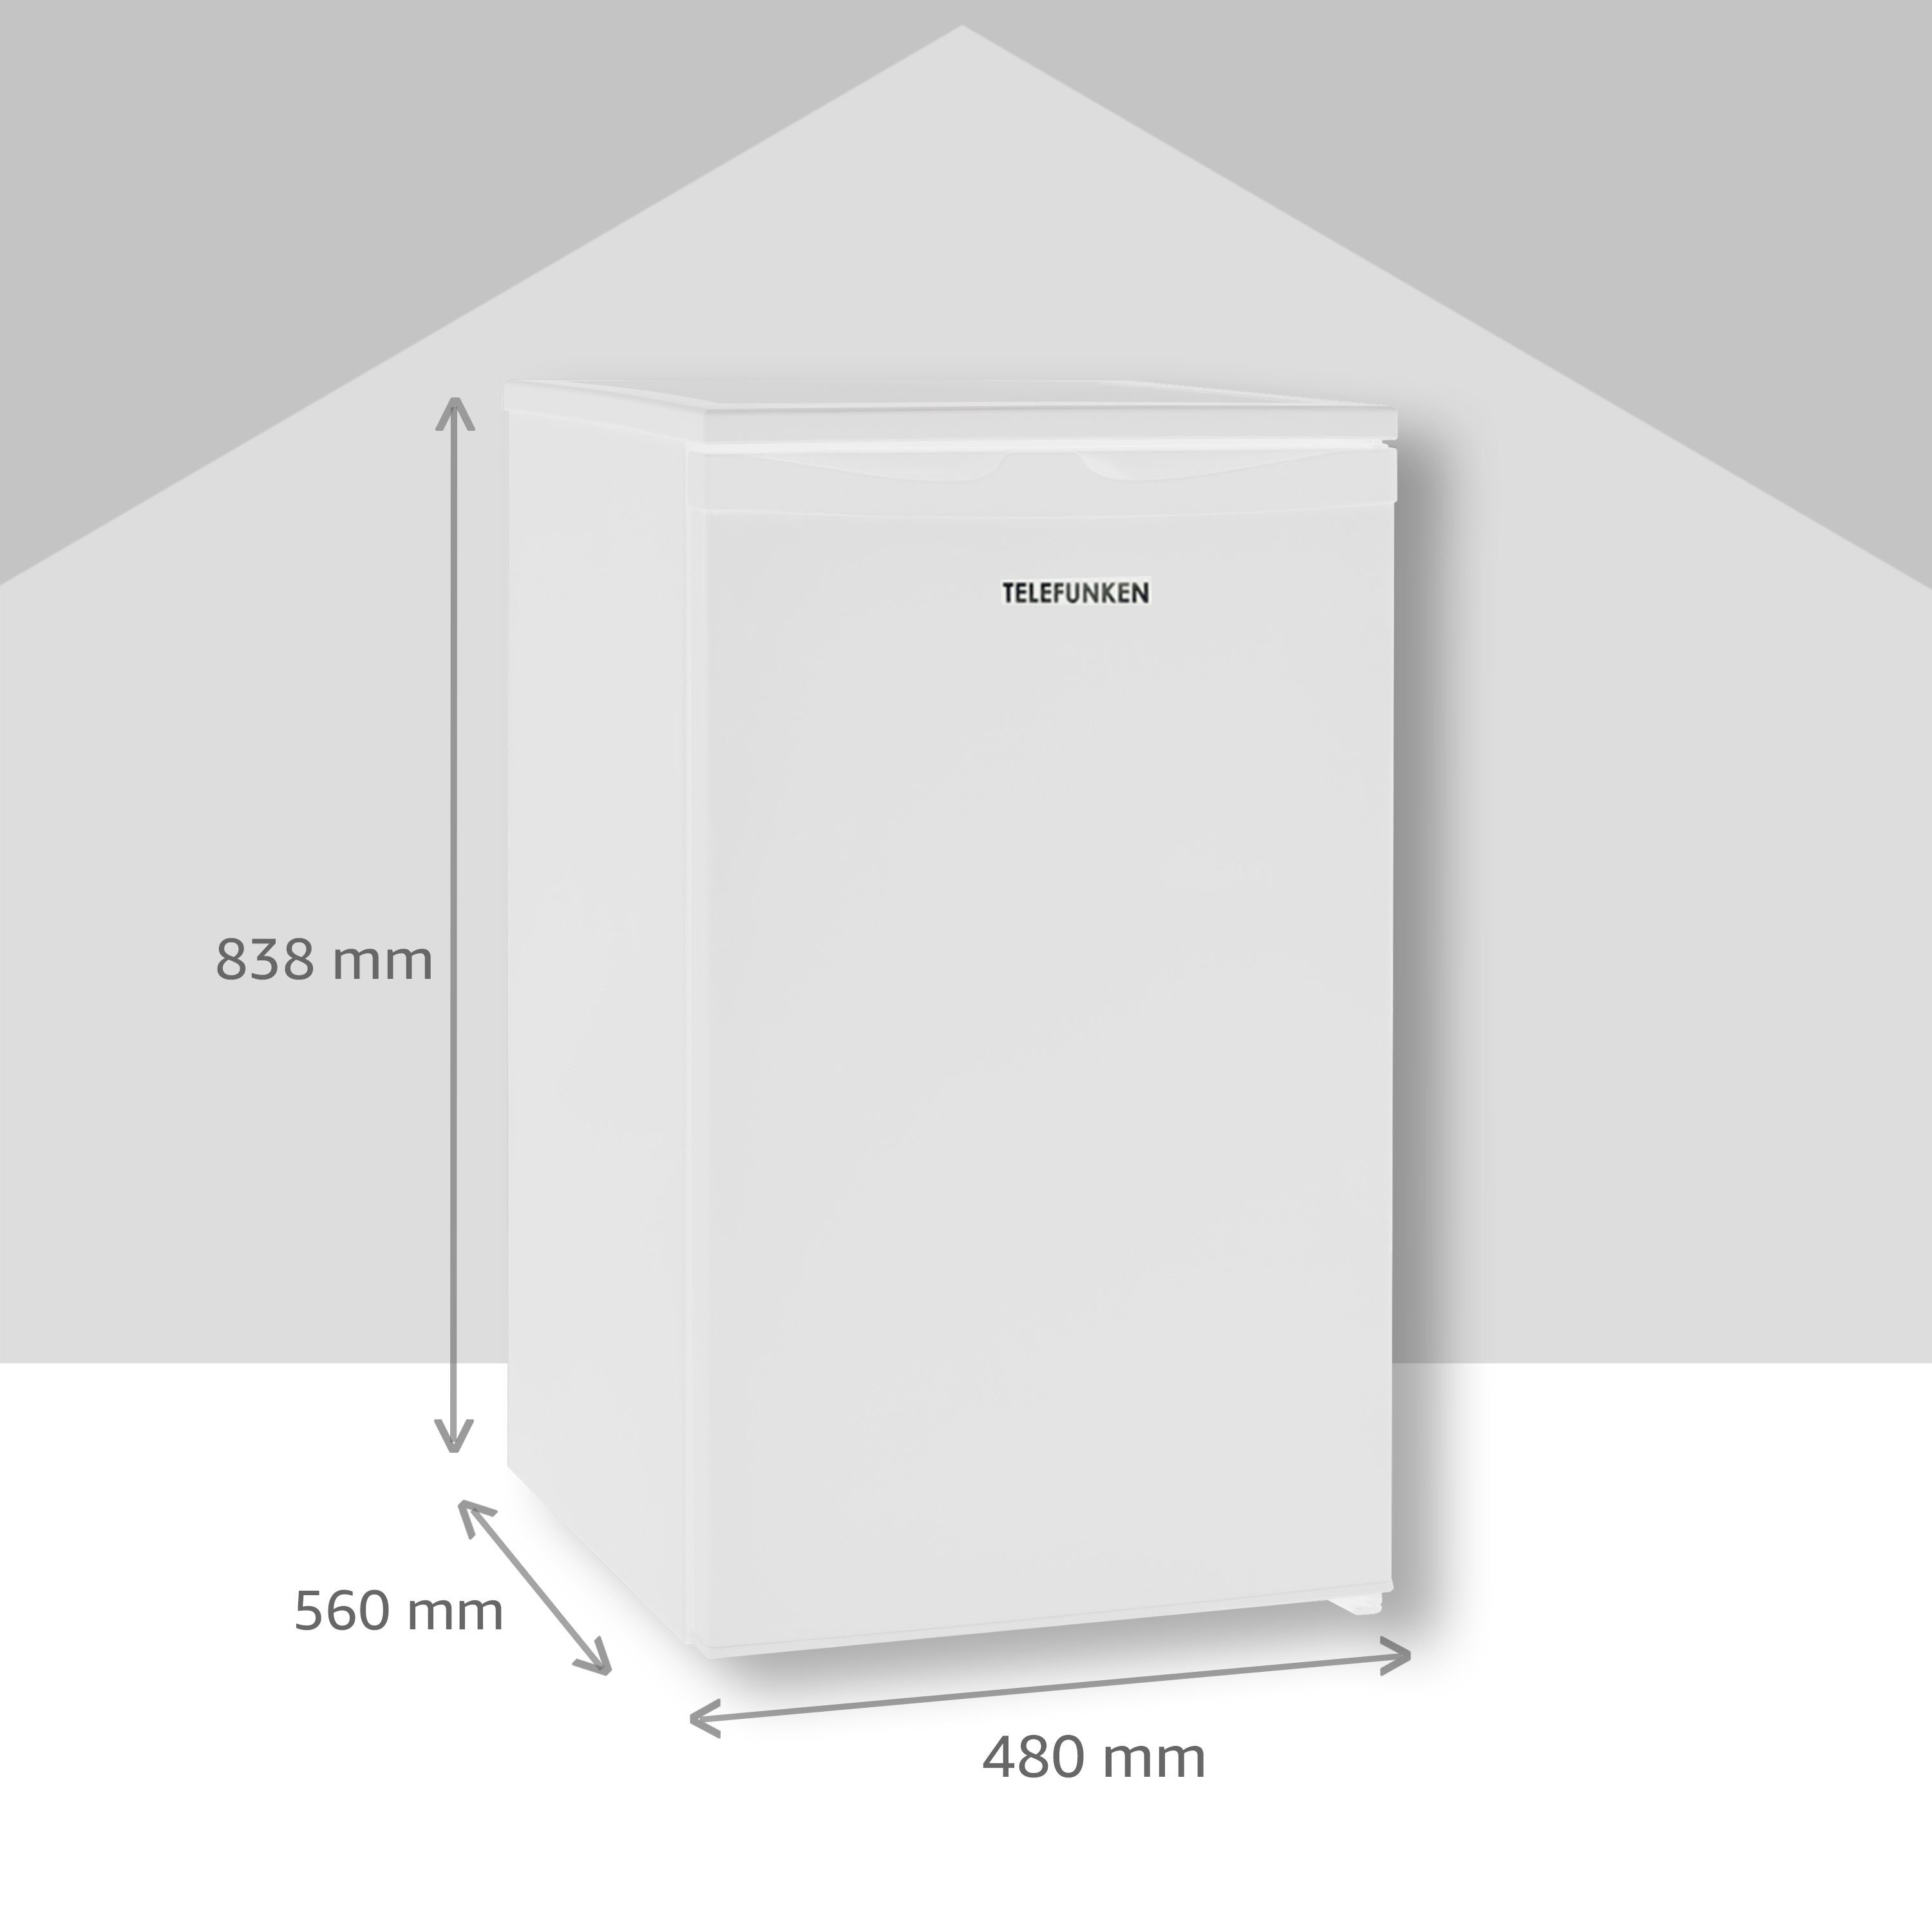 Gesamt-Nutzinhalt Tischkühlschrank cm 48 Telefunken L Gefrierfach, 83.8 cm CF-32-151-W, hoch, mit 81 breit, Kühlschrank